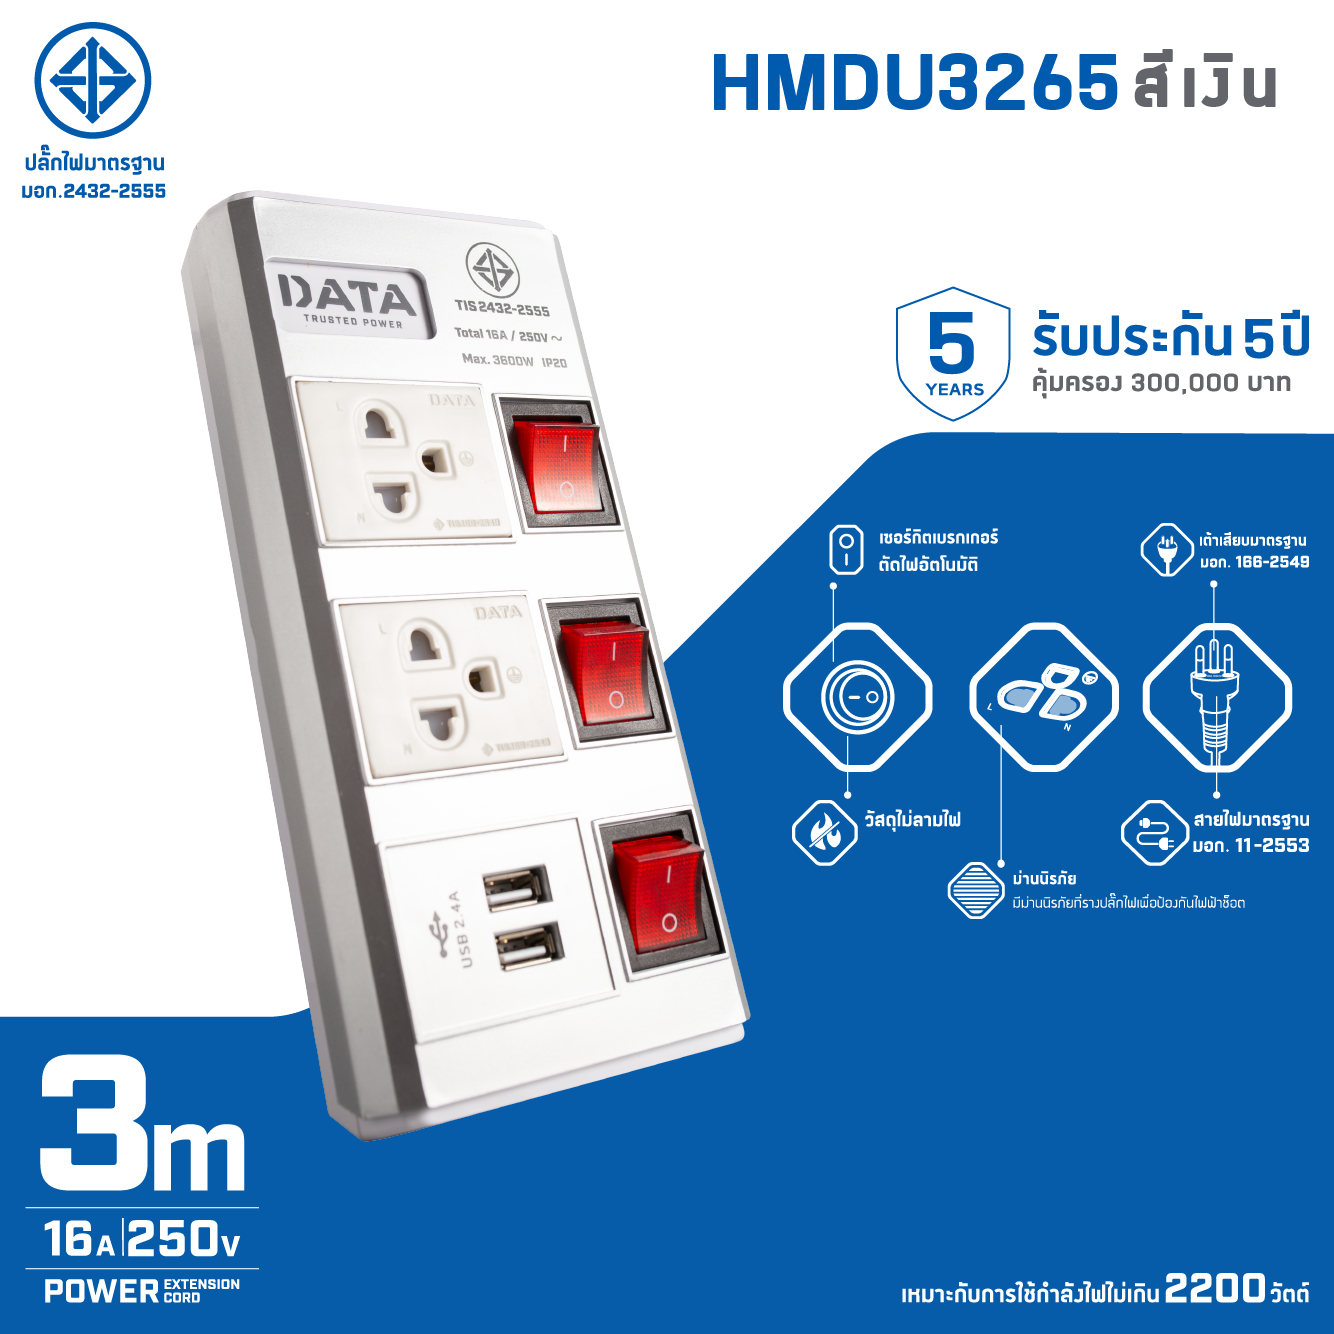 มุมมองเพิ่มเติมของสินค้า DATA ปลั๊กไฟ ดาต้า 2 ช่อง 3 สวิตช์ 2 USB รุ่น HMDU3265